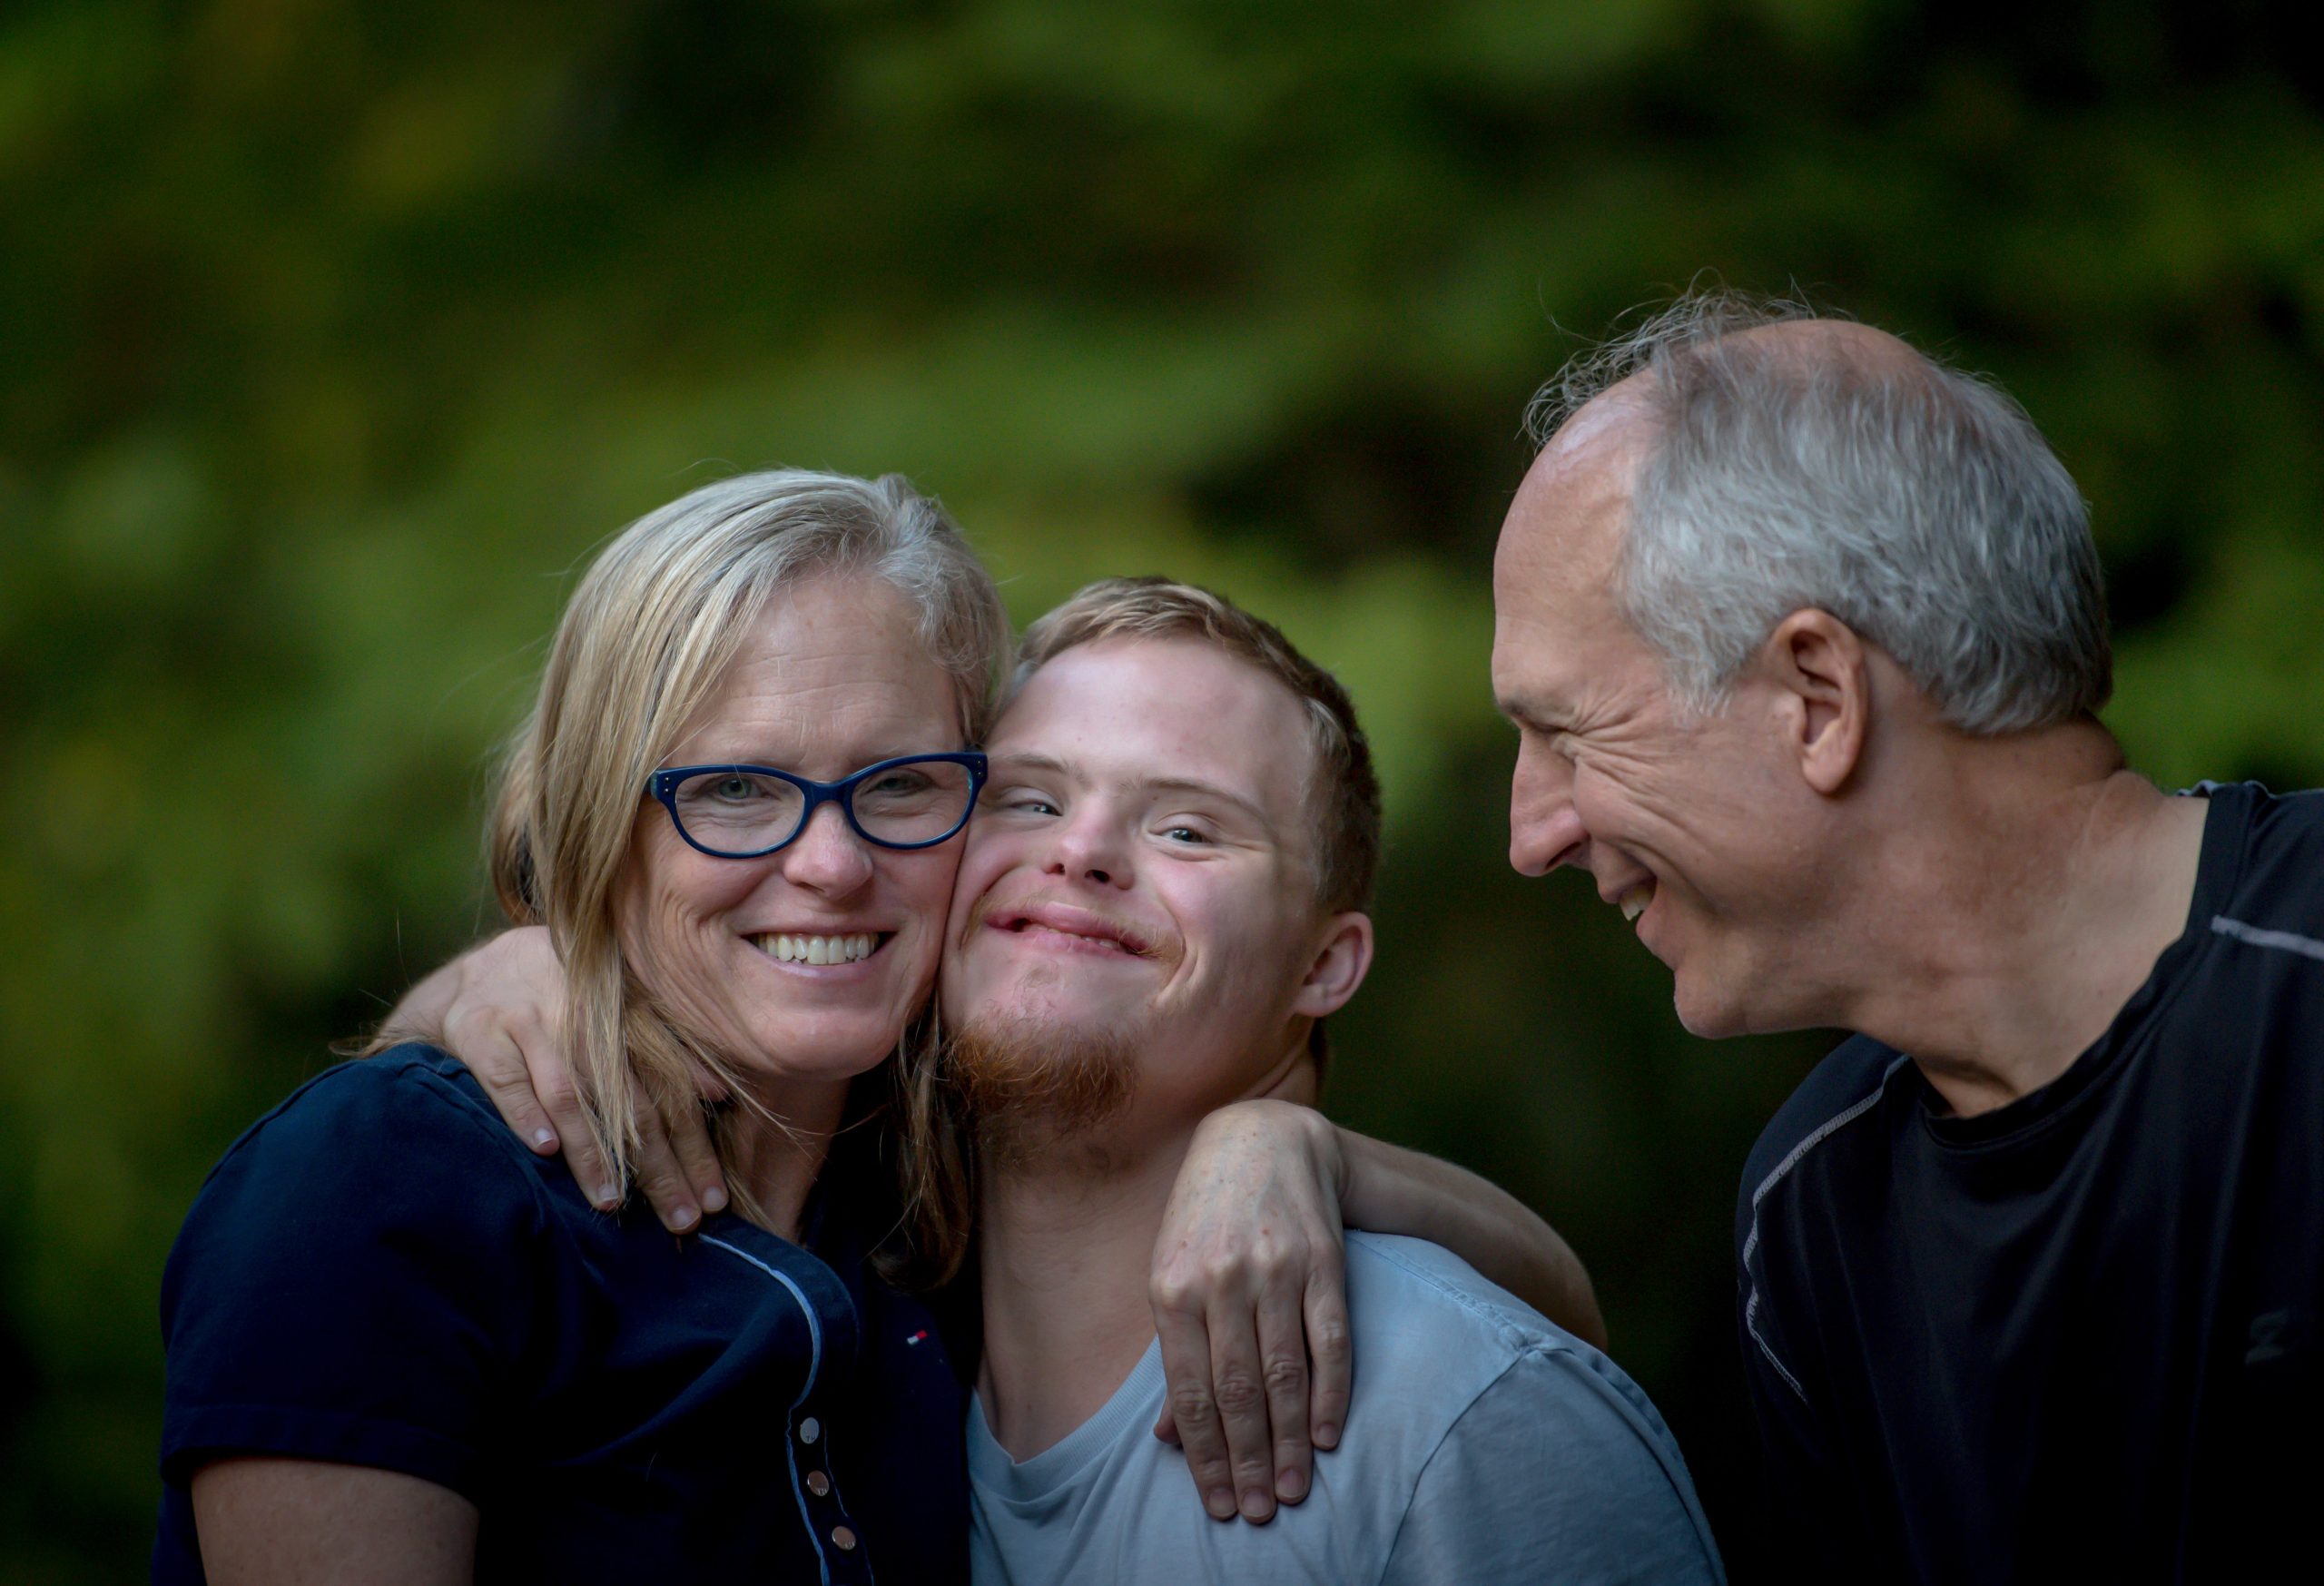 mamma abbracciata al figlio con la sindrome di down che sorride, a fianco al padre, sorridente anche lui.